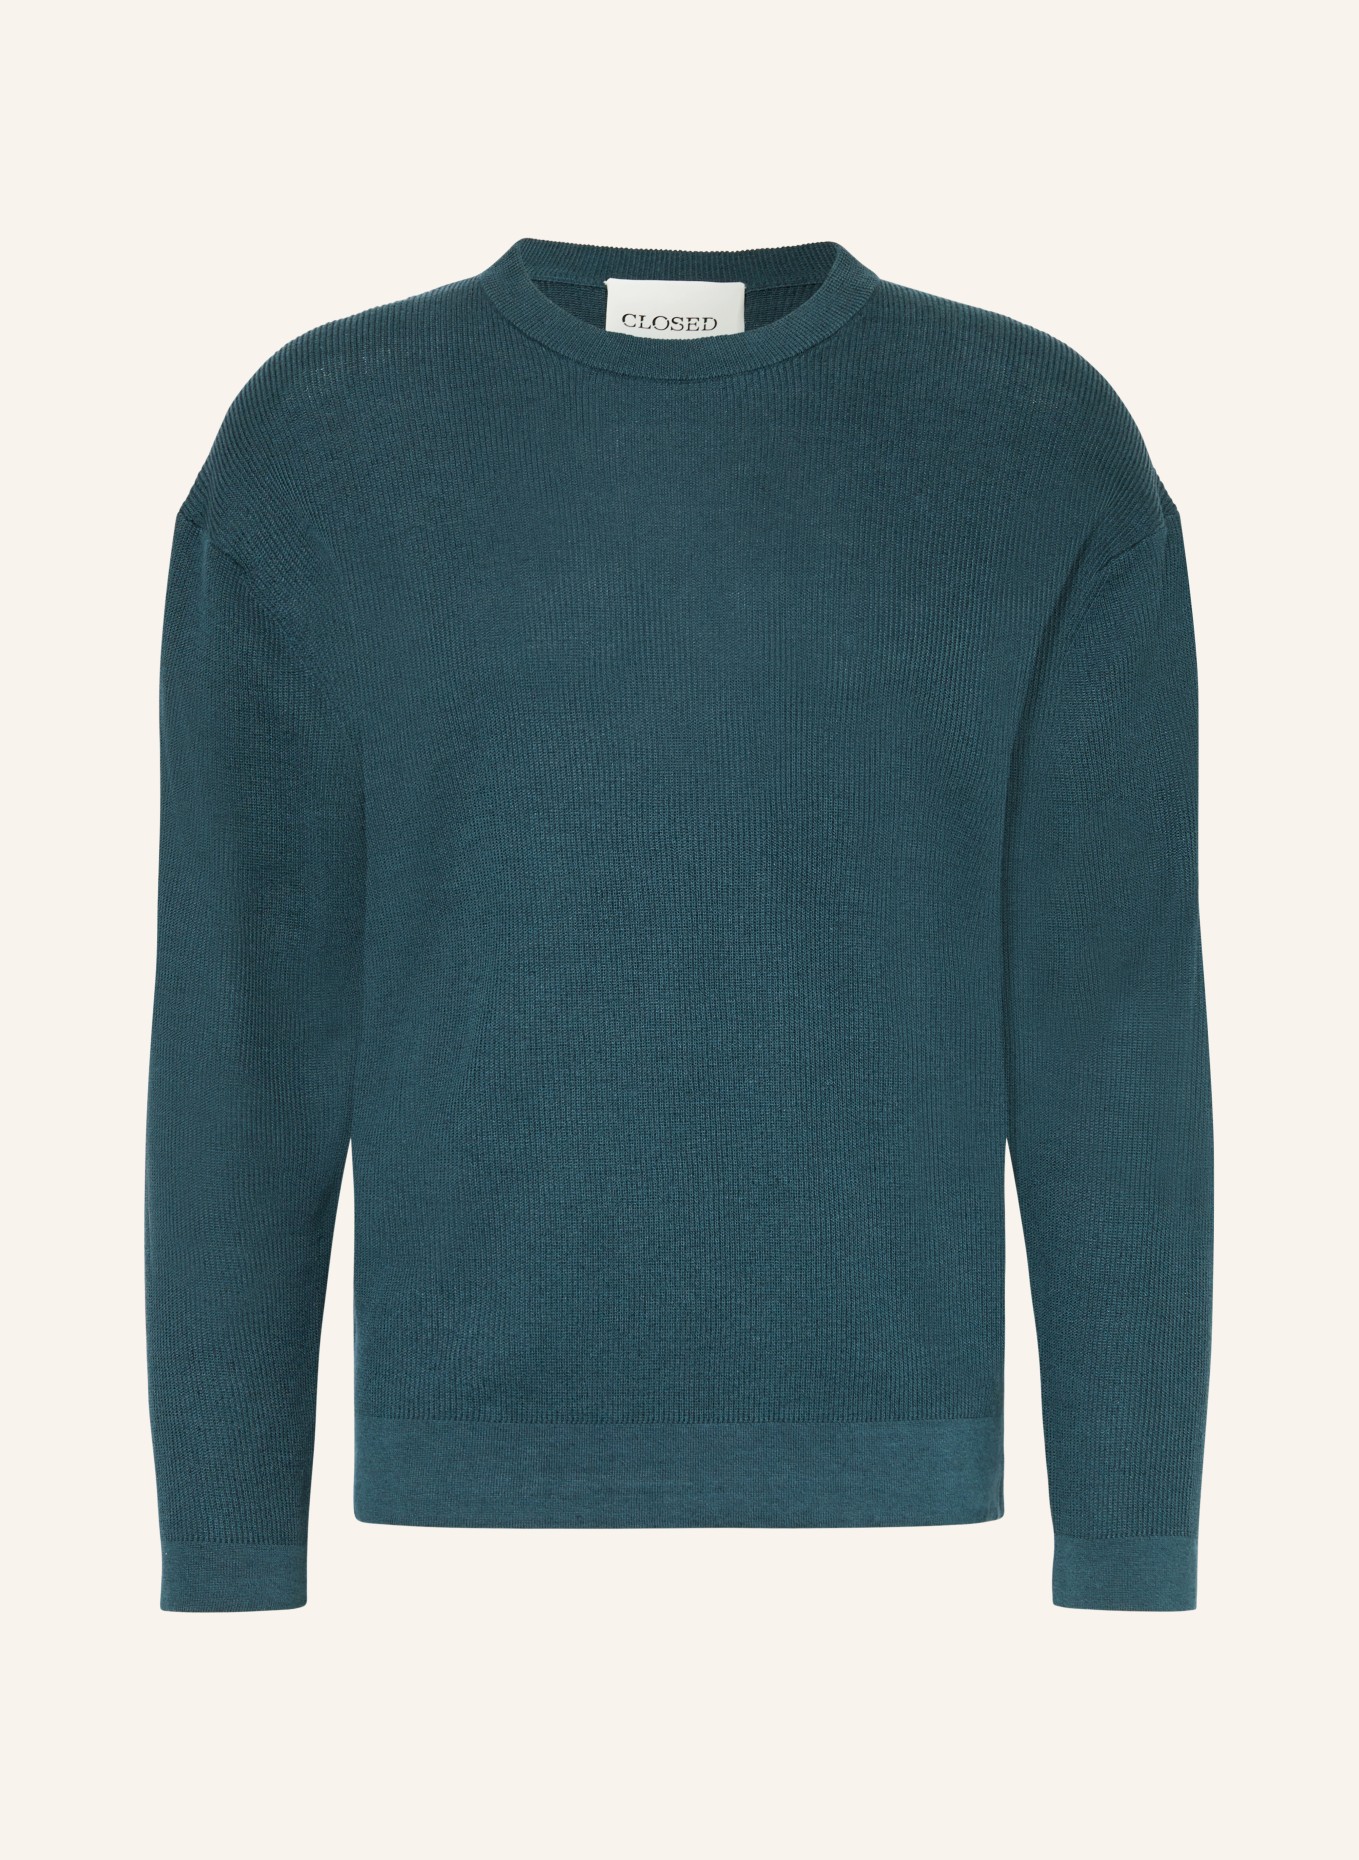 CLOSED Pullover, Farbe: PETROL (Bild 1)